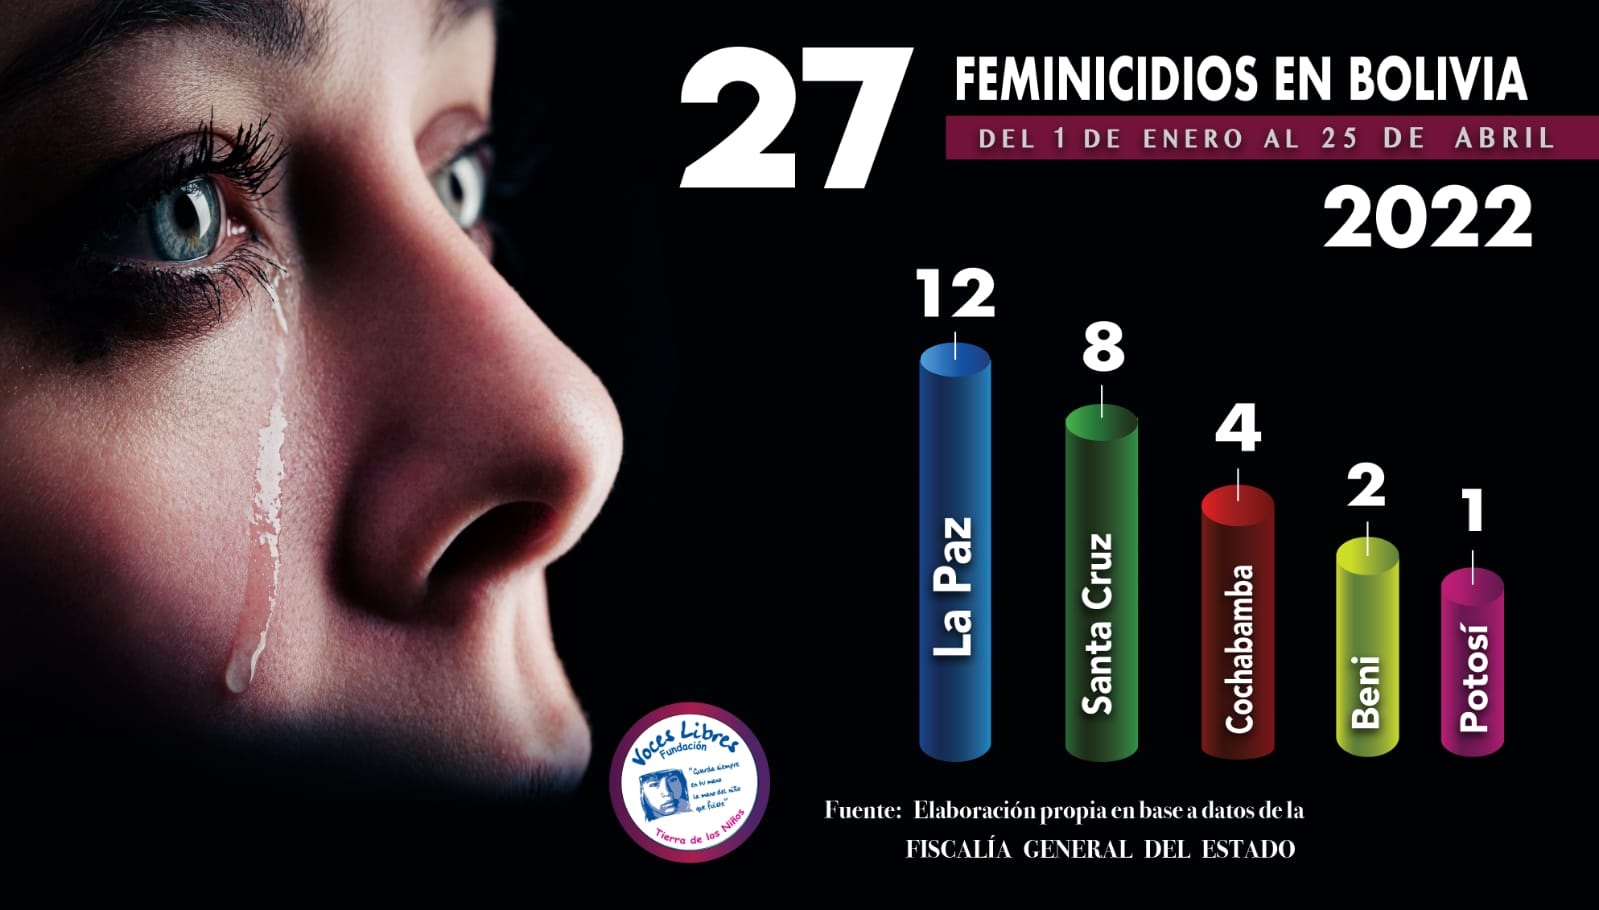 27 feminicidios enlutan a Bolivia